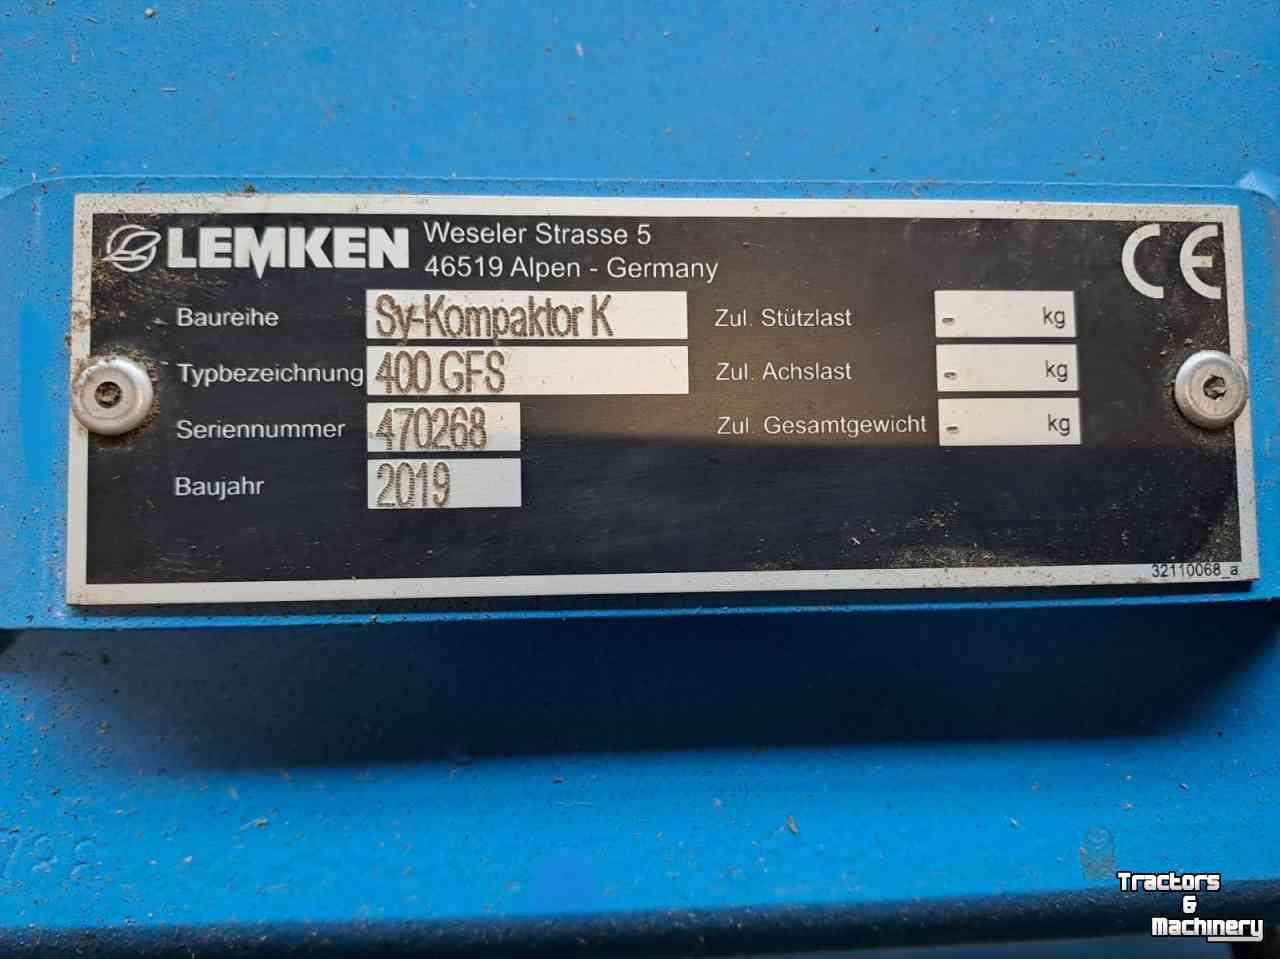 Combination de préparation du lit de semence Lemken kompaktor k400